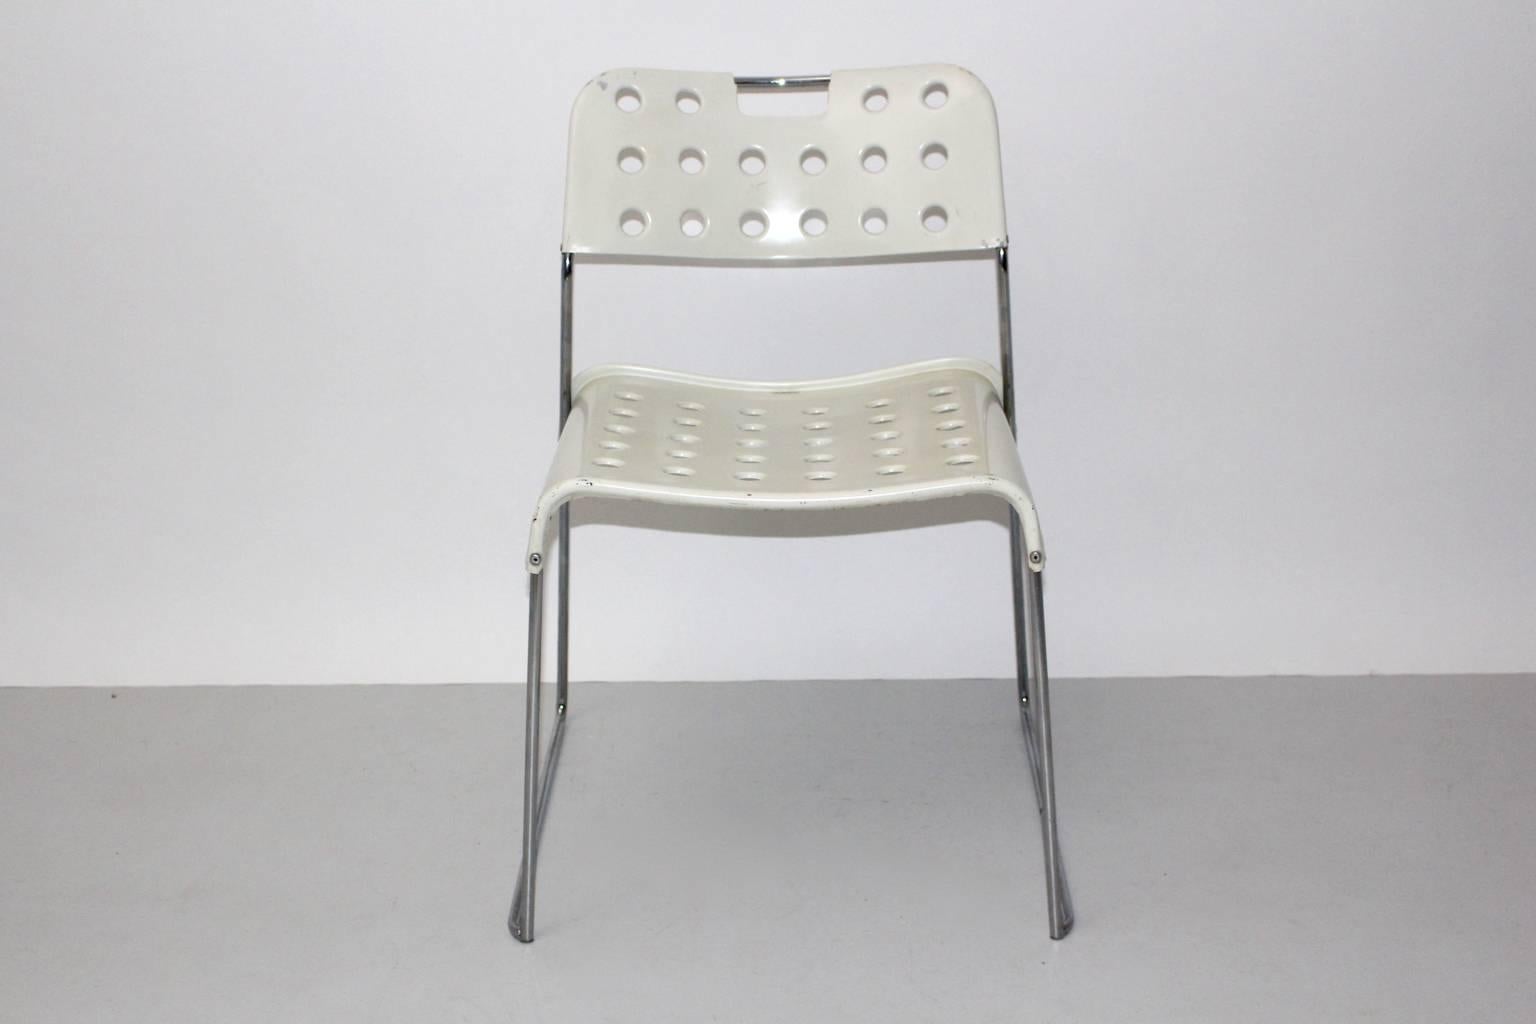 Space Age vintage weißer Stuhl oder Beistellstuhl Modell Omstak entworfen von Rodney Kinsman 1971 und hergestellt von Bieffeplast, Caselle di Selvazzano.
Der außergewöhnliche Stuhl hat eine perforierte Sitzfläche und Rückenlehne aus mit Kunststoff